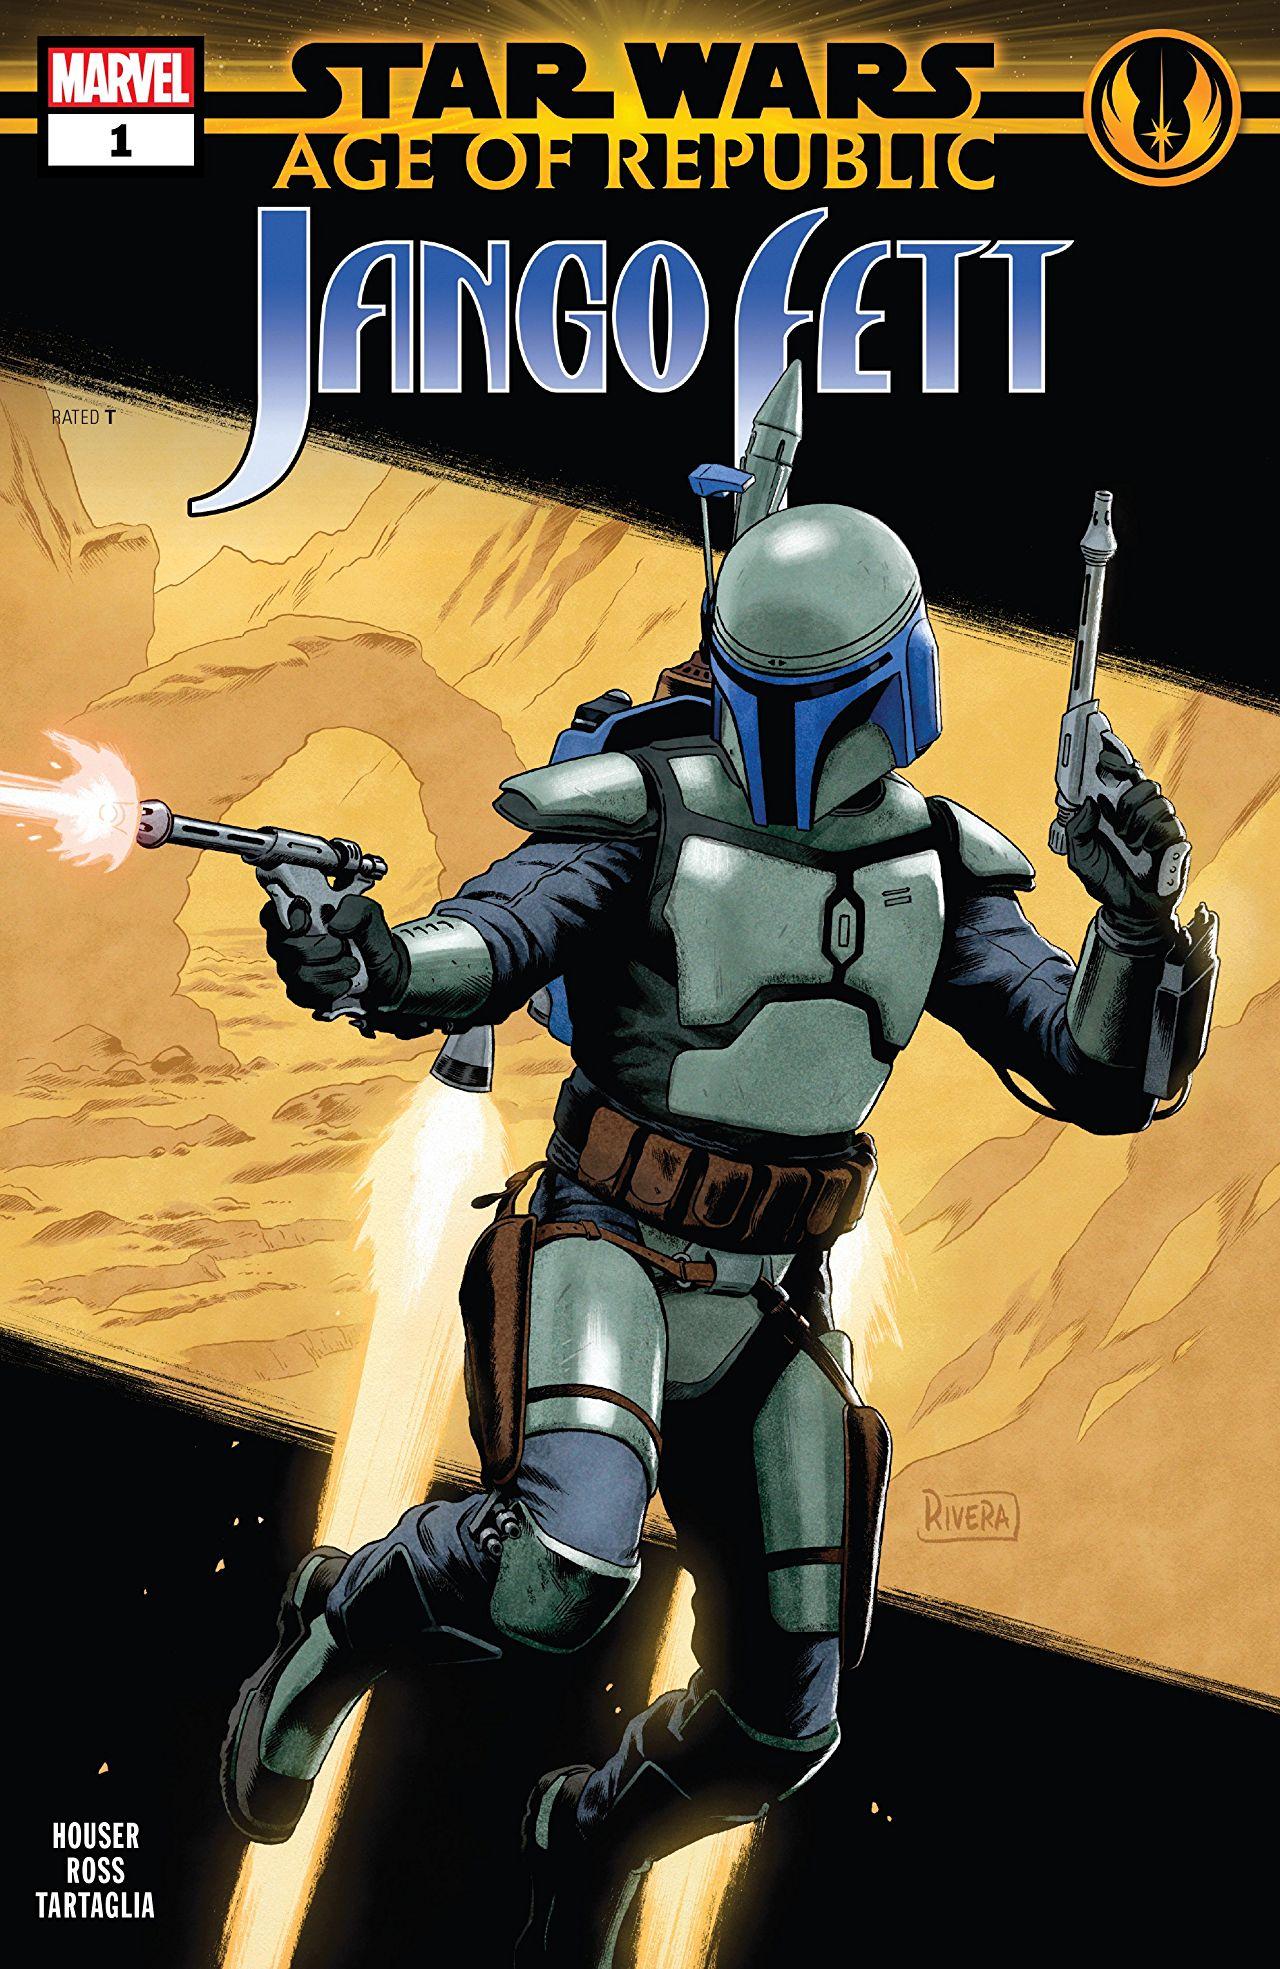 Star Wars: Age of Republic - Jango Fett Vol. 1 #1